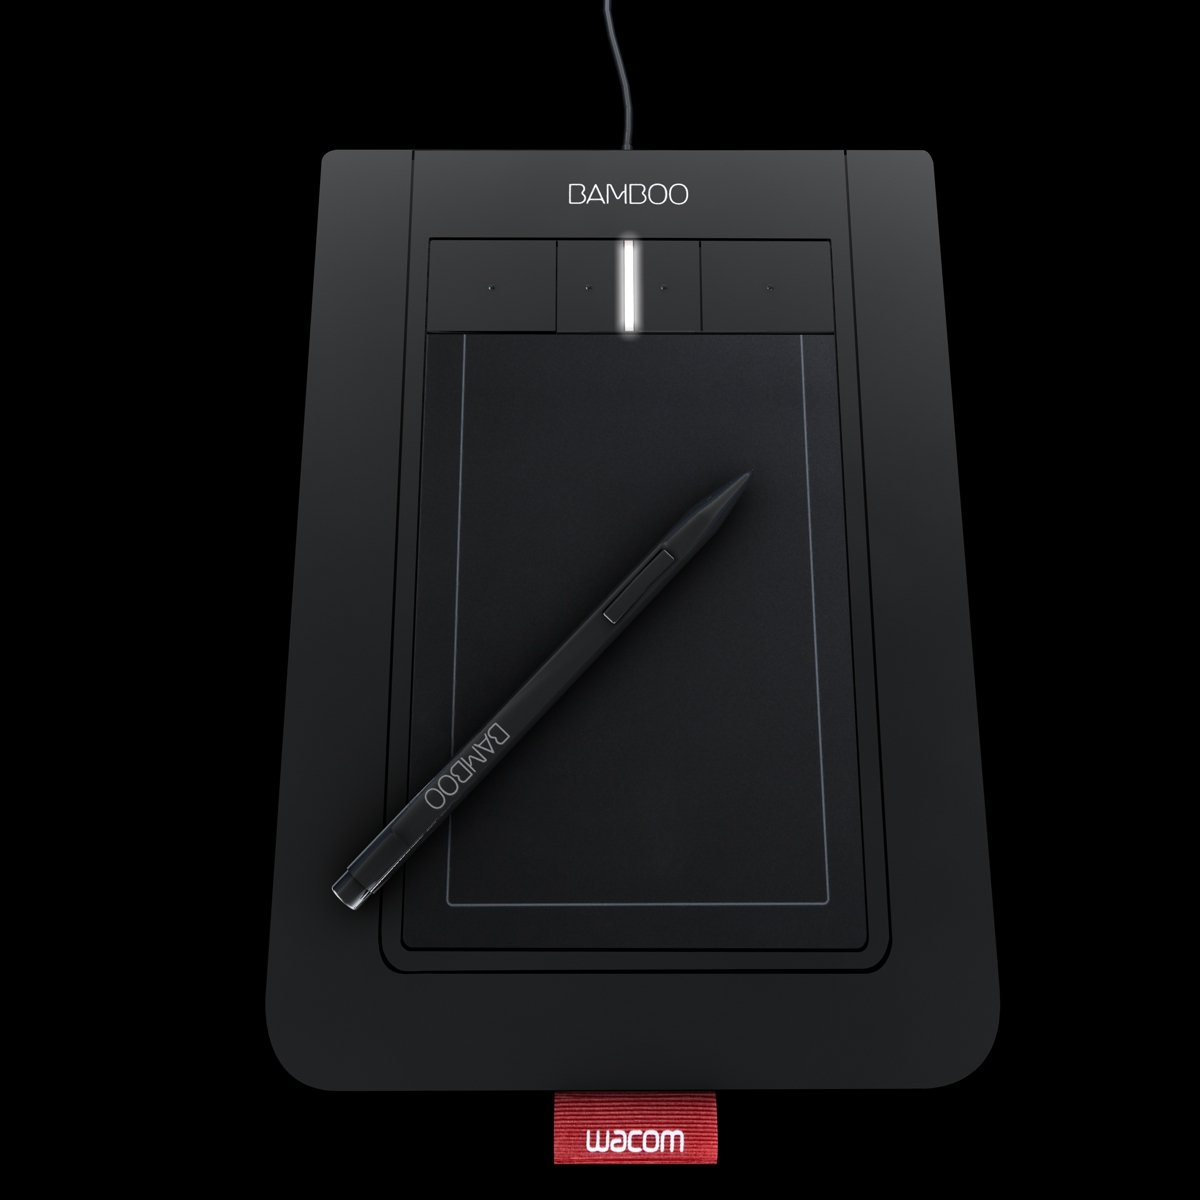 Wacom BAMBOO pen tablet CTL-460 | eBay